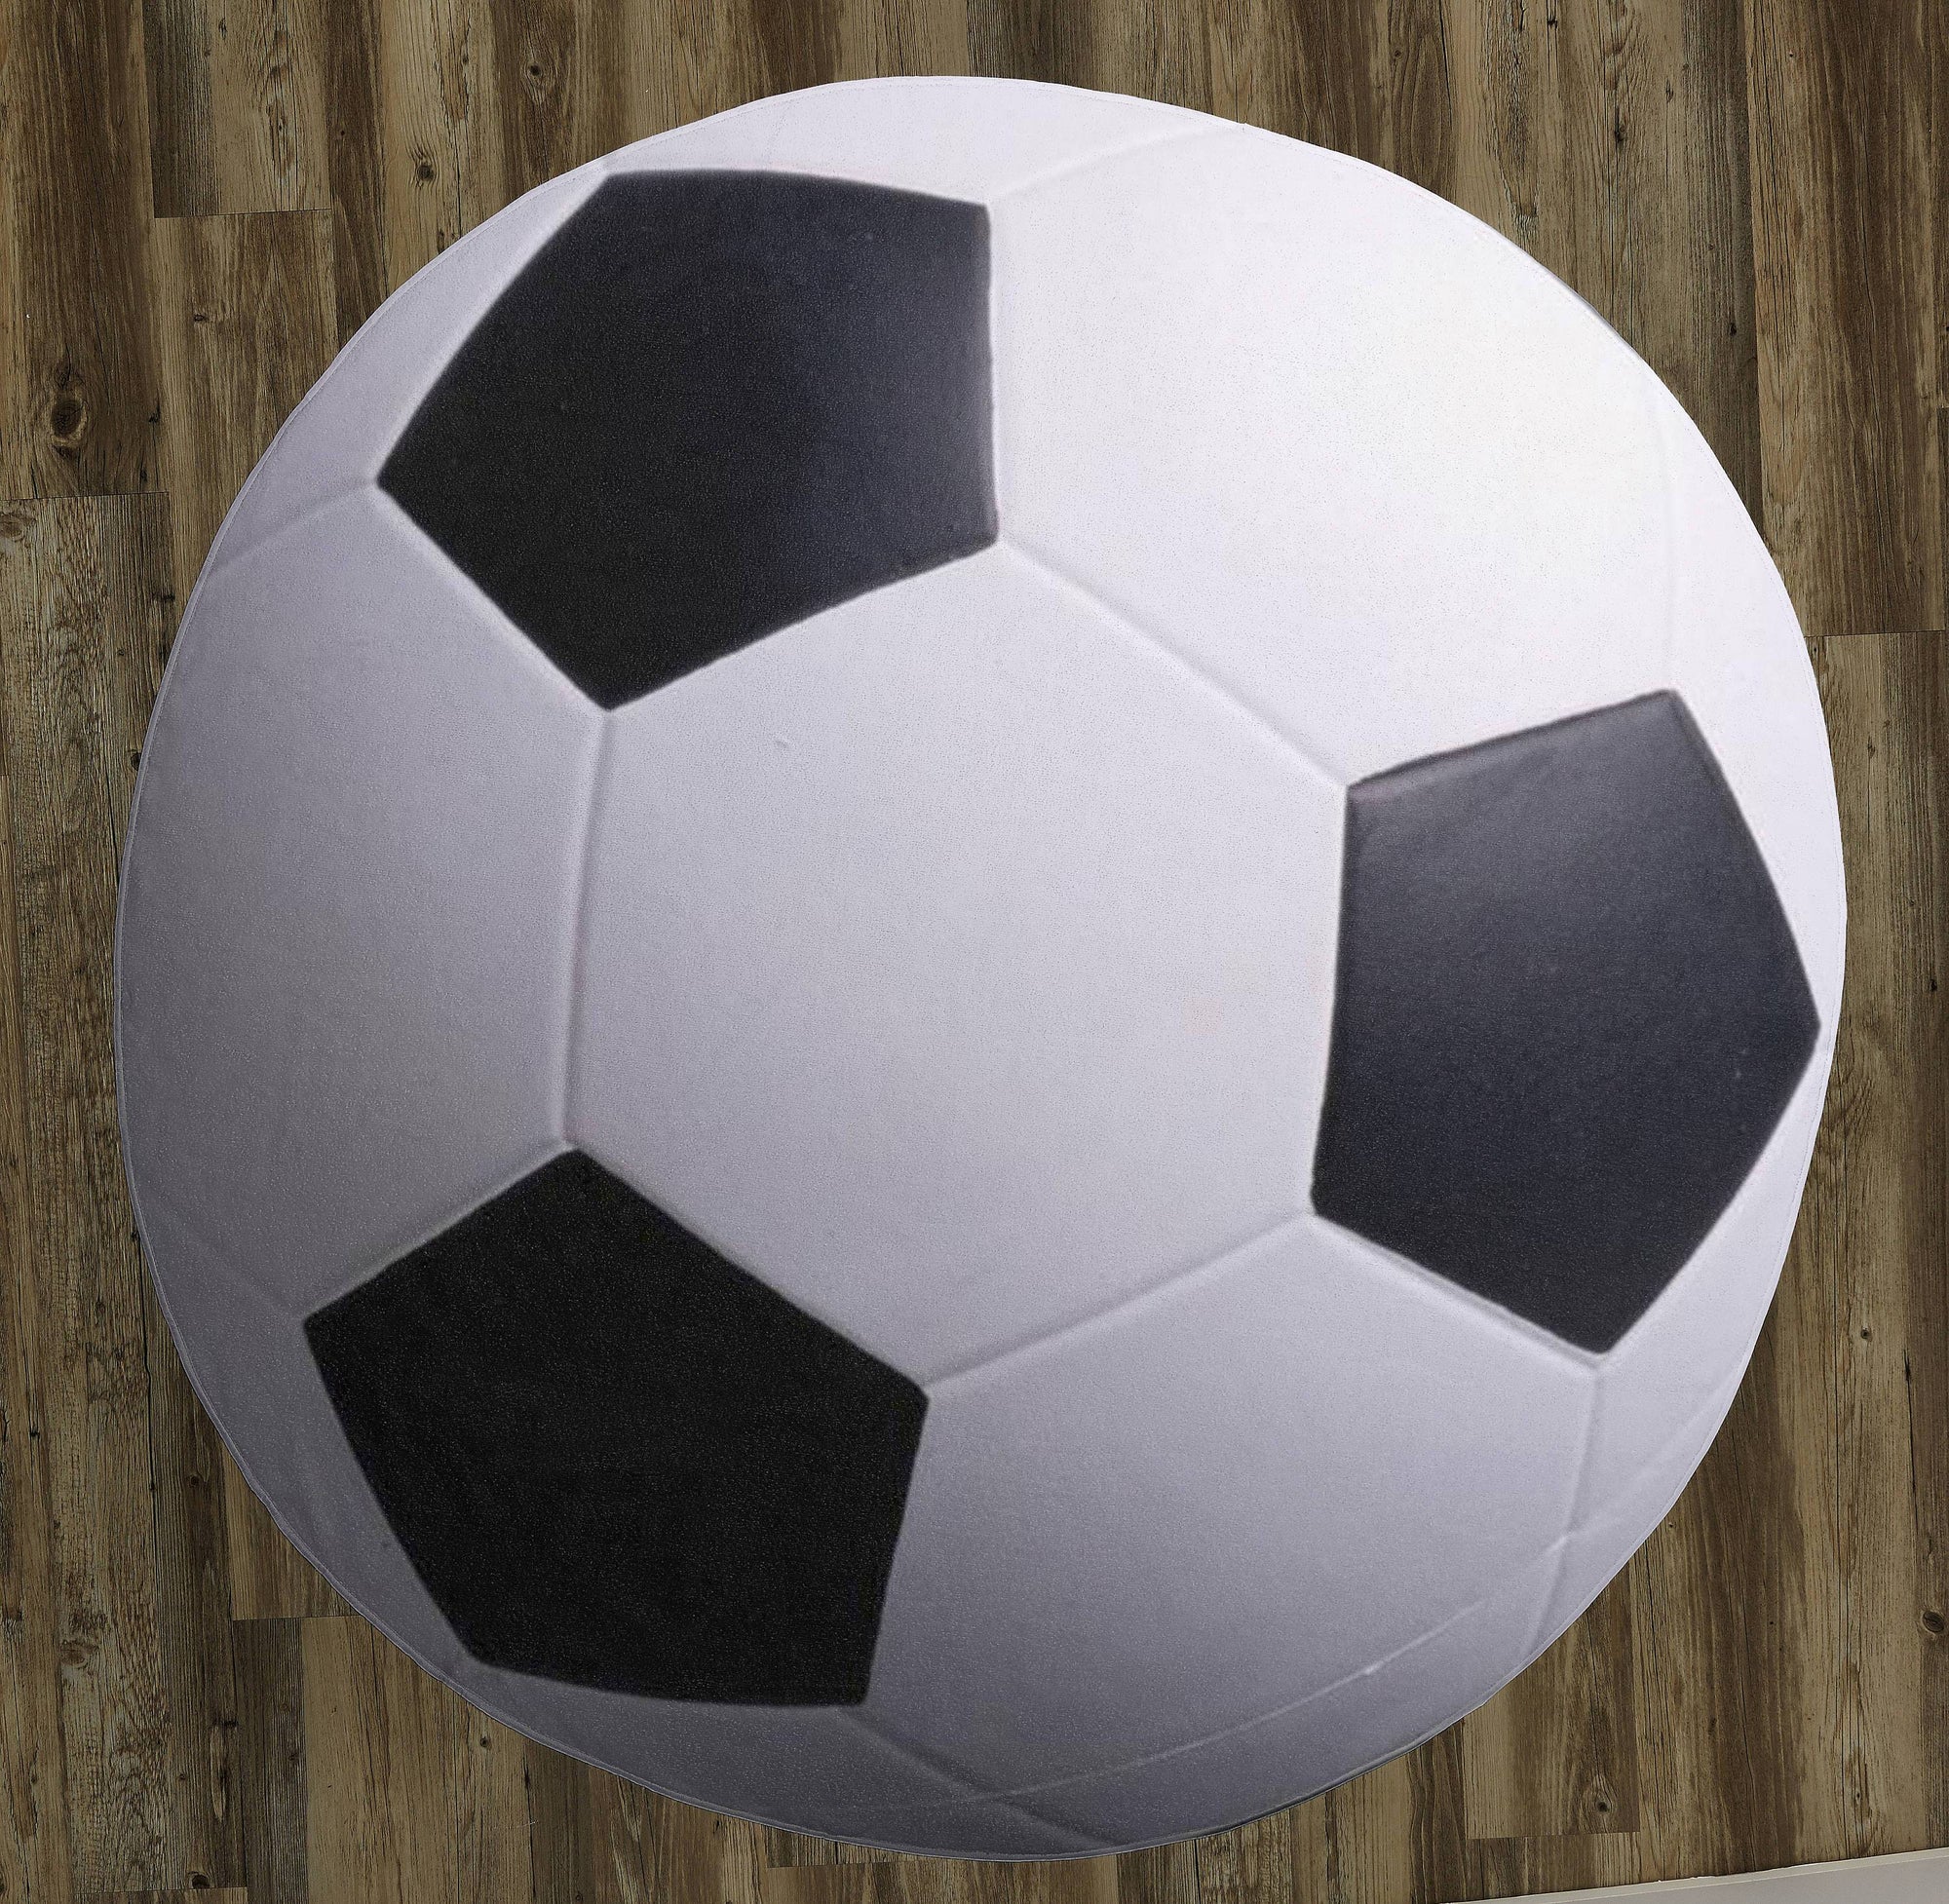 Soccer Ball - 60" Round Rug / Carpet